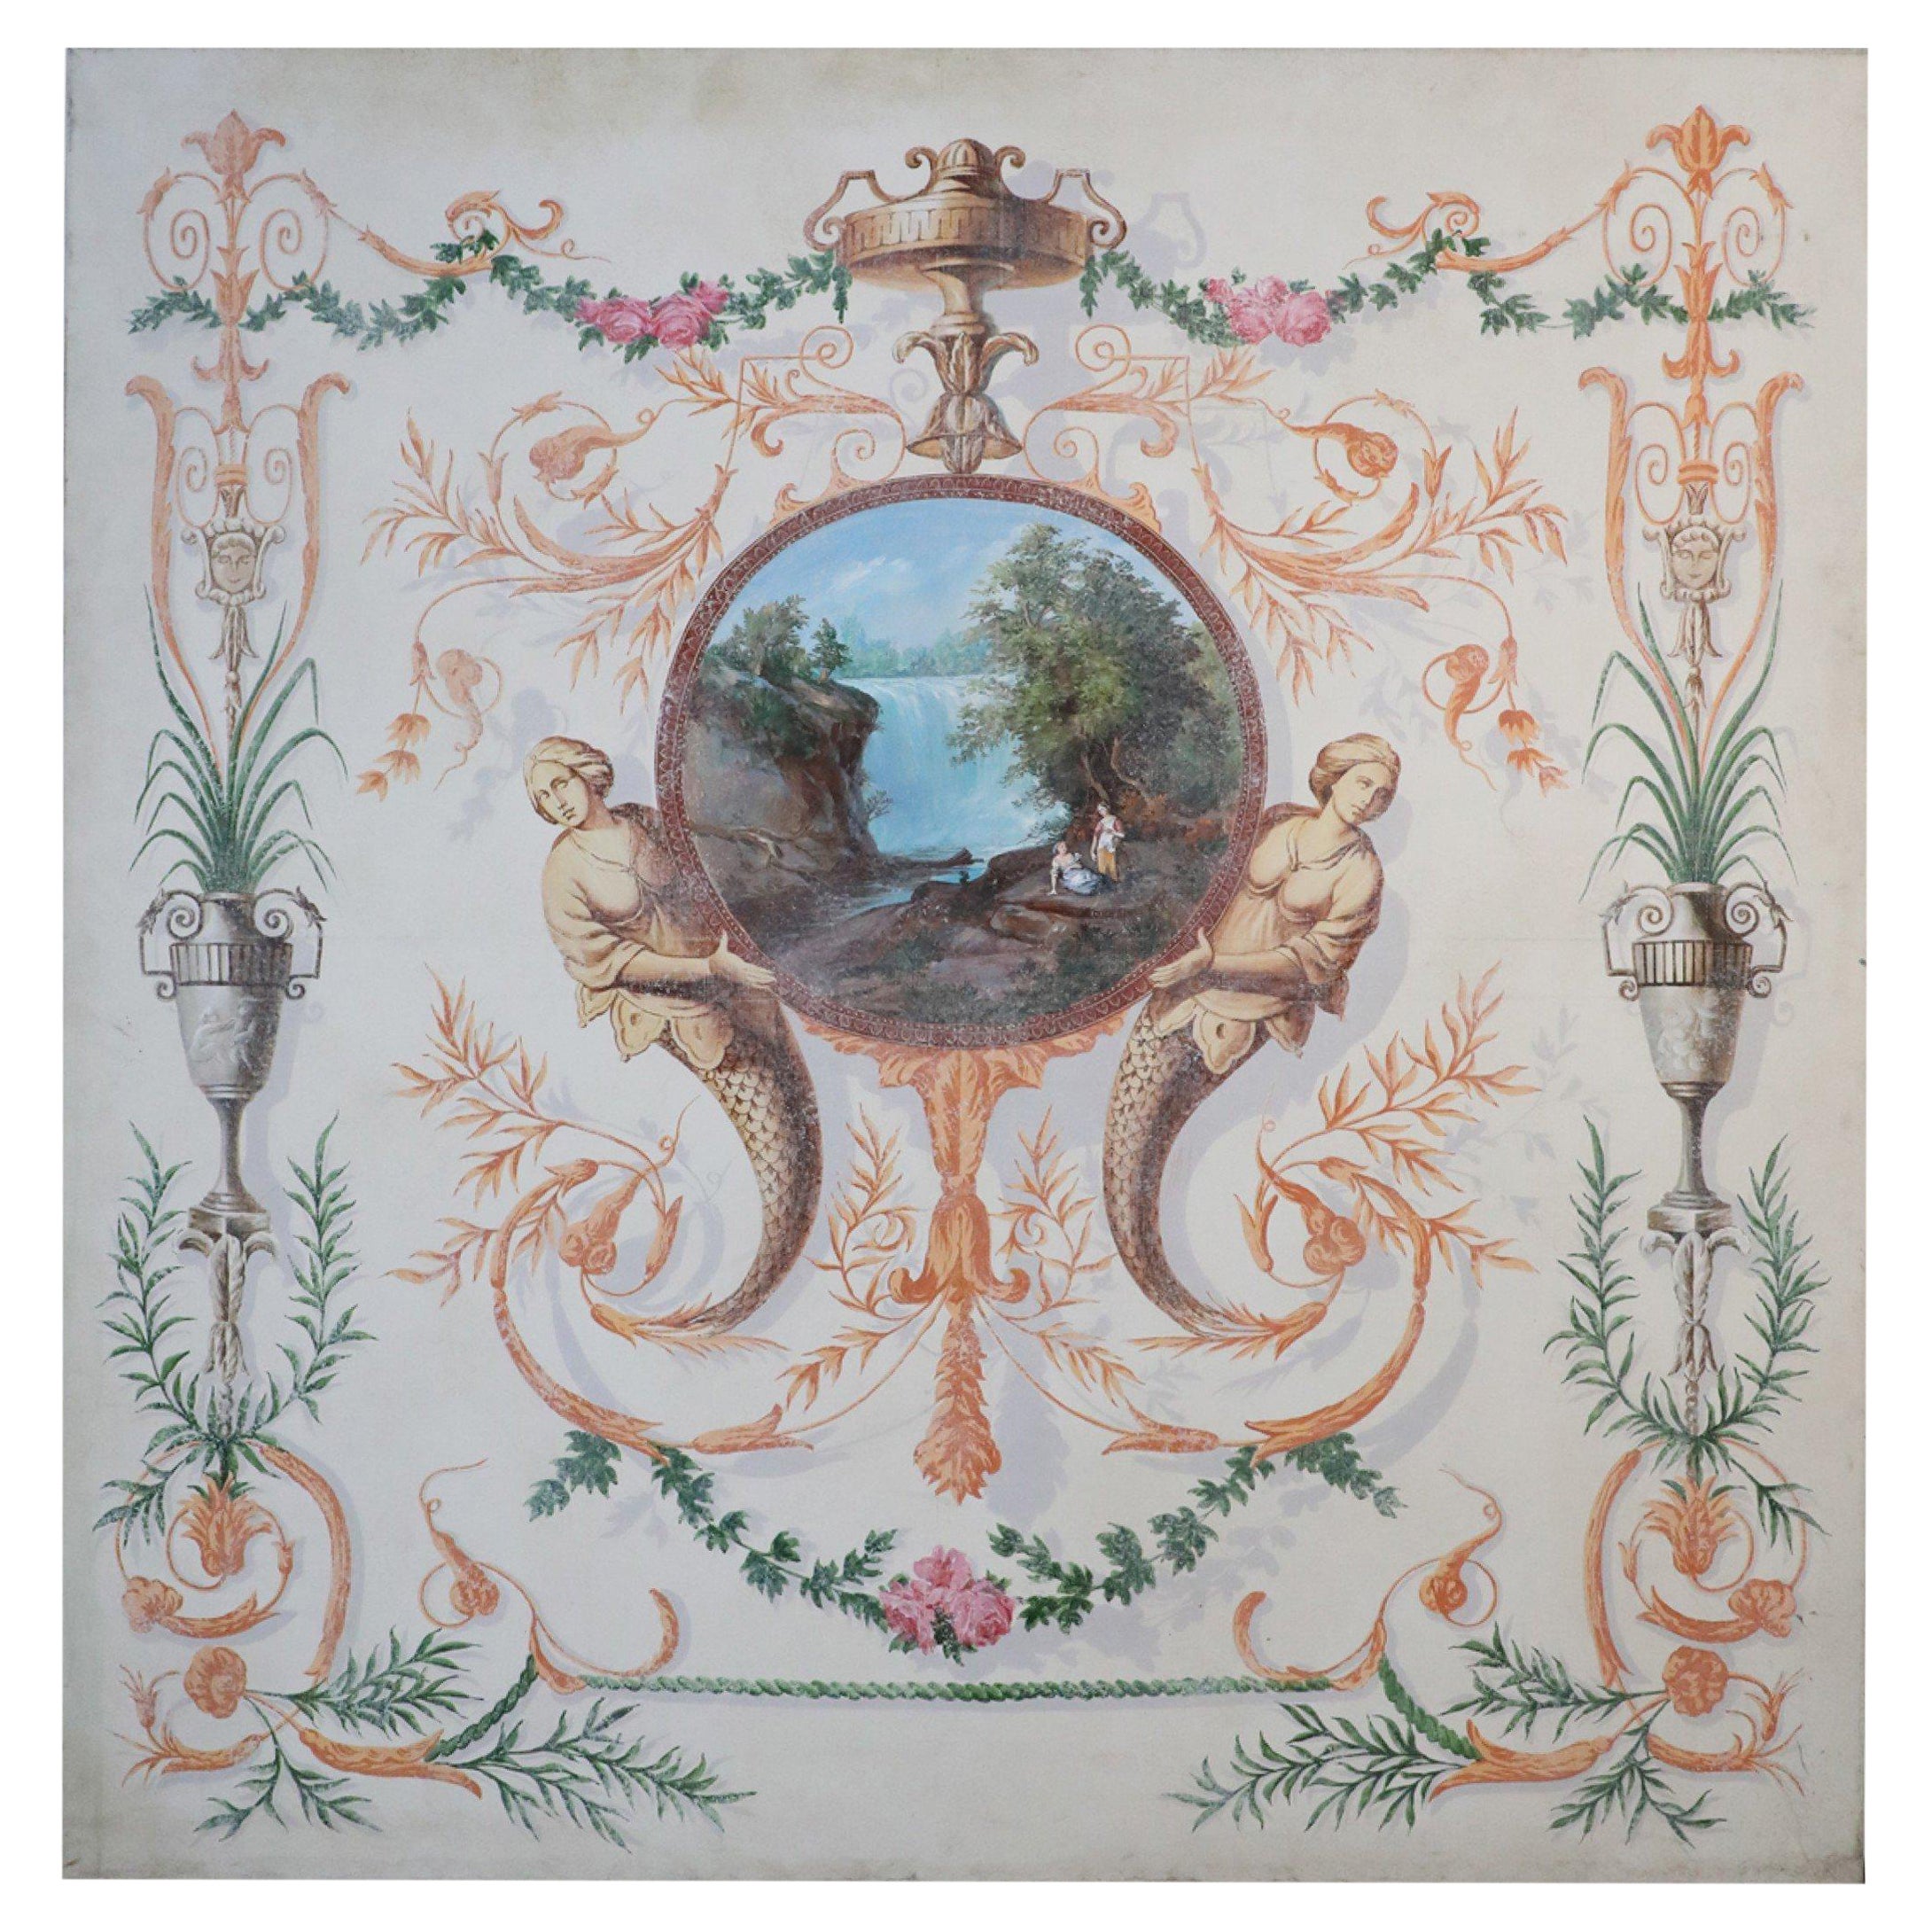 Peinture de paysage néoclassique avec ornementation florale et sirène